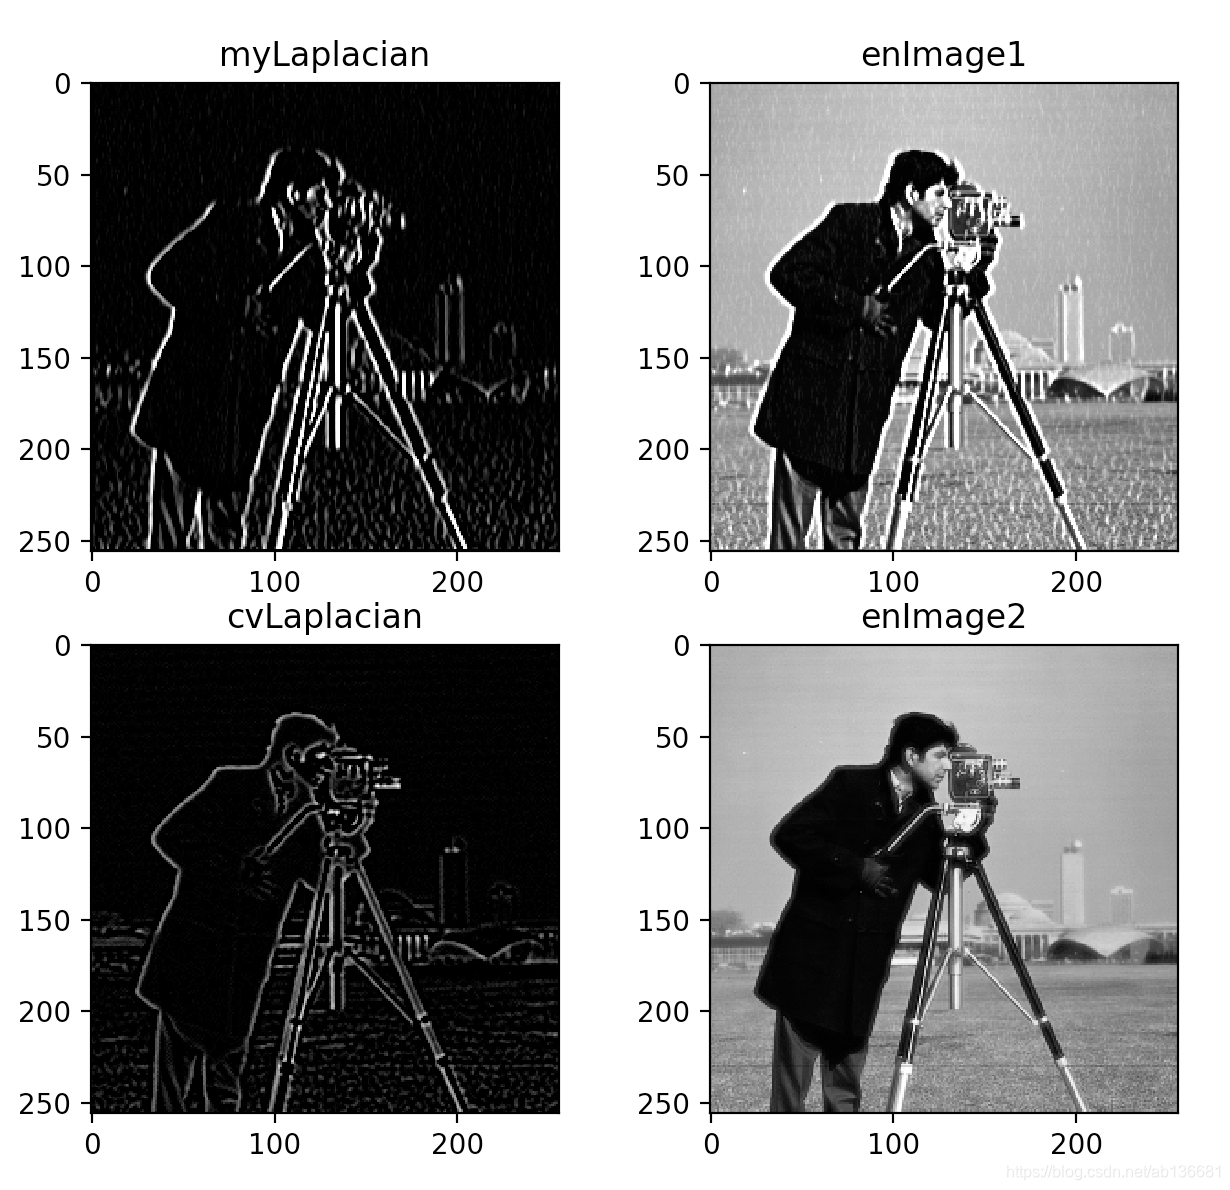 数字图像处理｜Matlab-空域增强实验-彩色图像的直方图均衡化_空域图像增强实验 编制一个对图像进行直方图均衡化处理的程序。_匿名用户小易的博客-CSDN博客